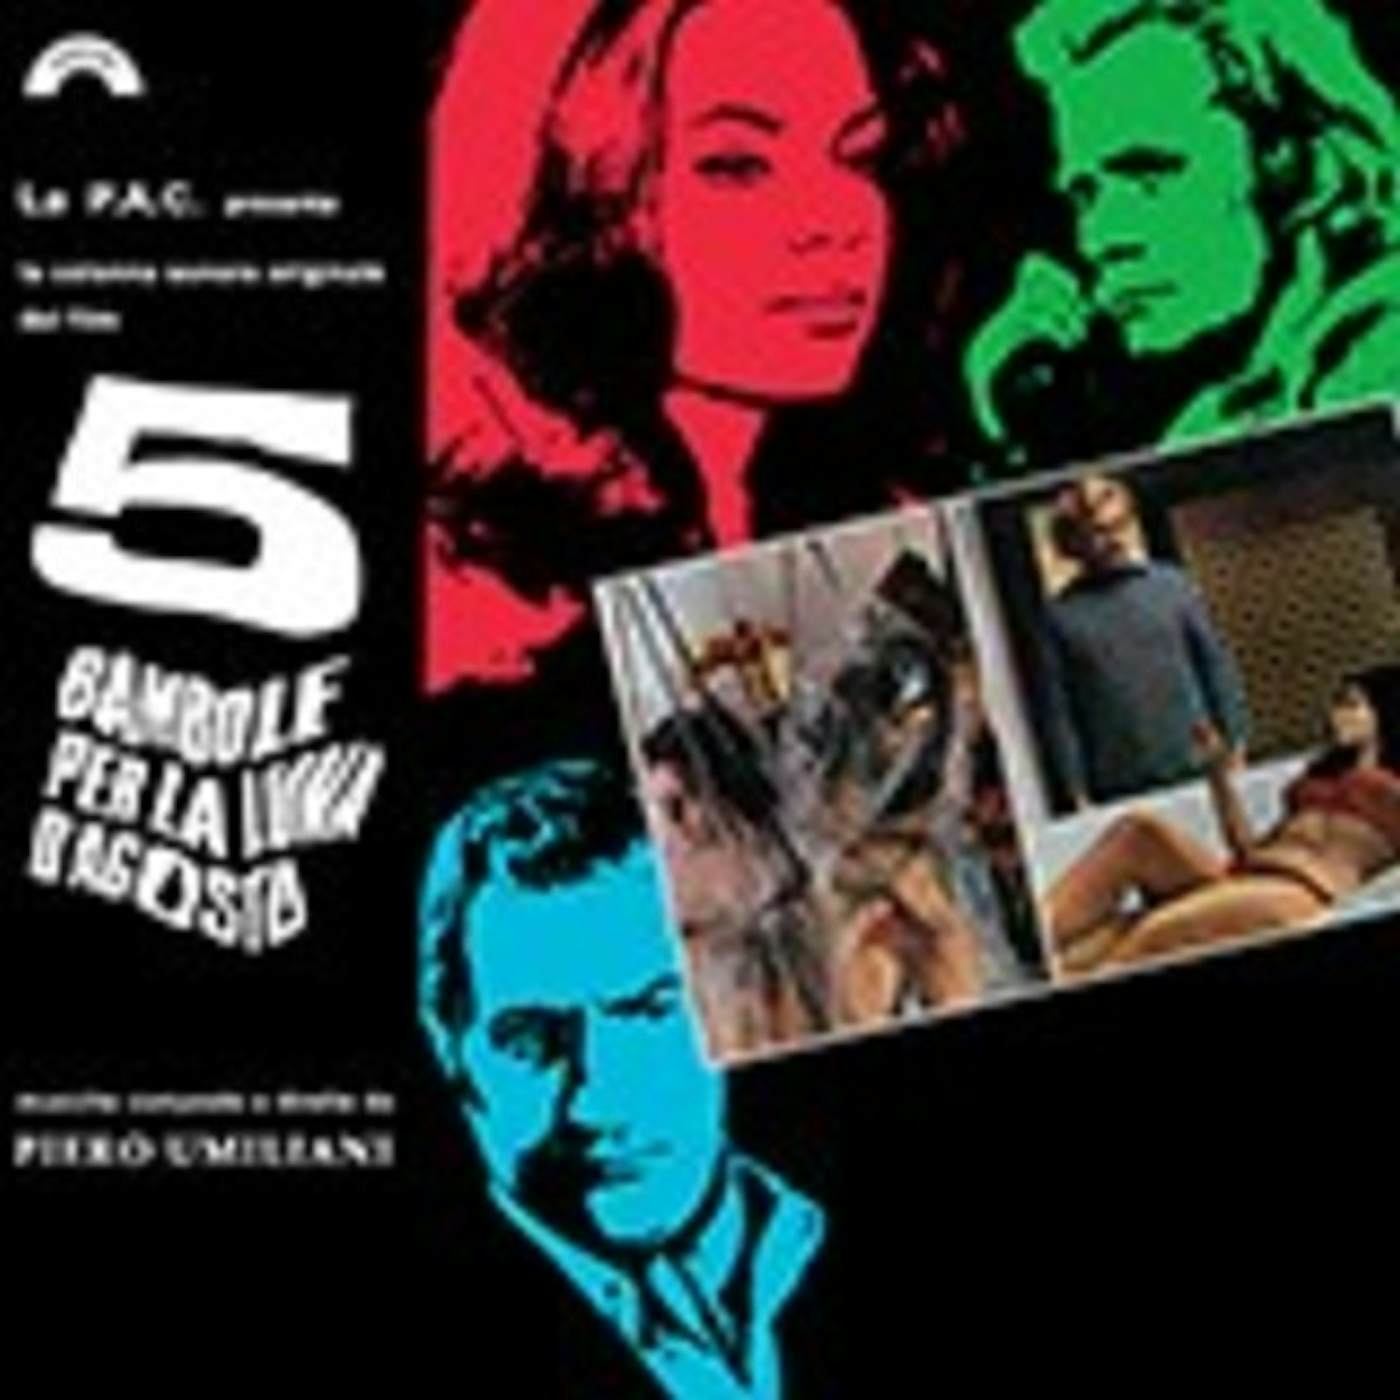 Piero Umiliani 5 BAMBOLE PER LA LUNA D'AGOSTO / Original Soundtrack Vinyl Record